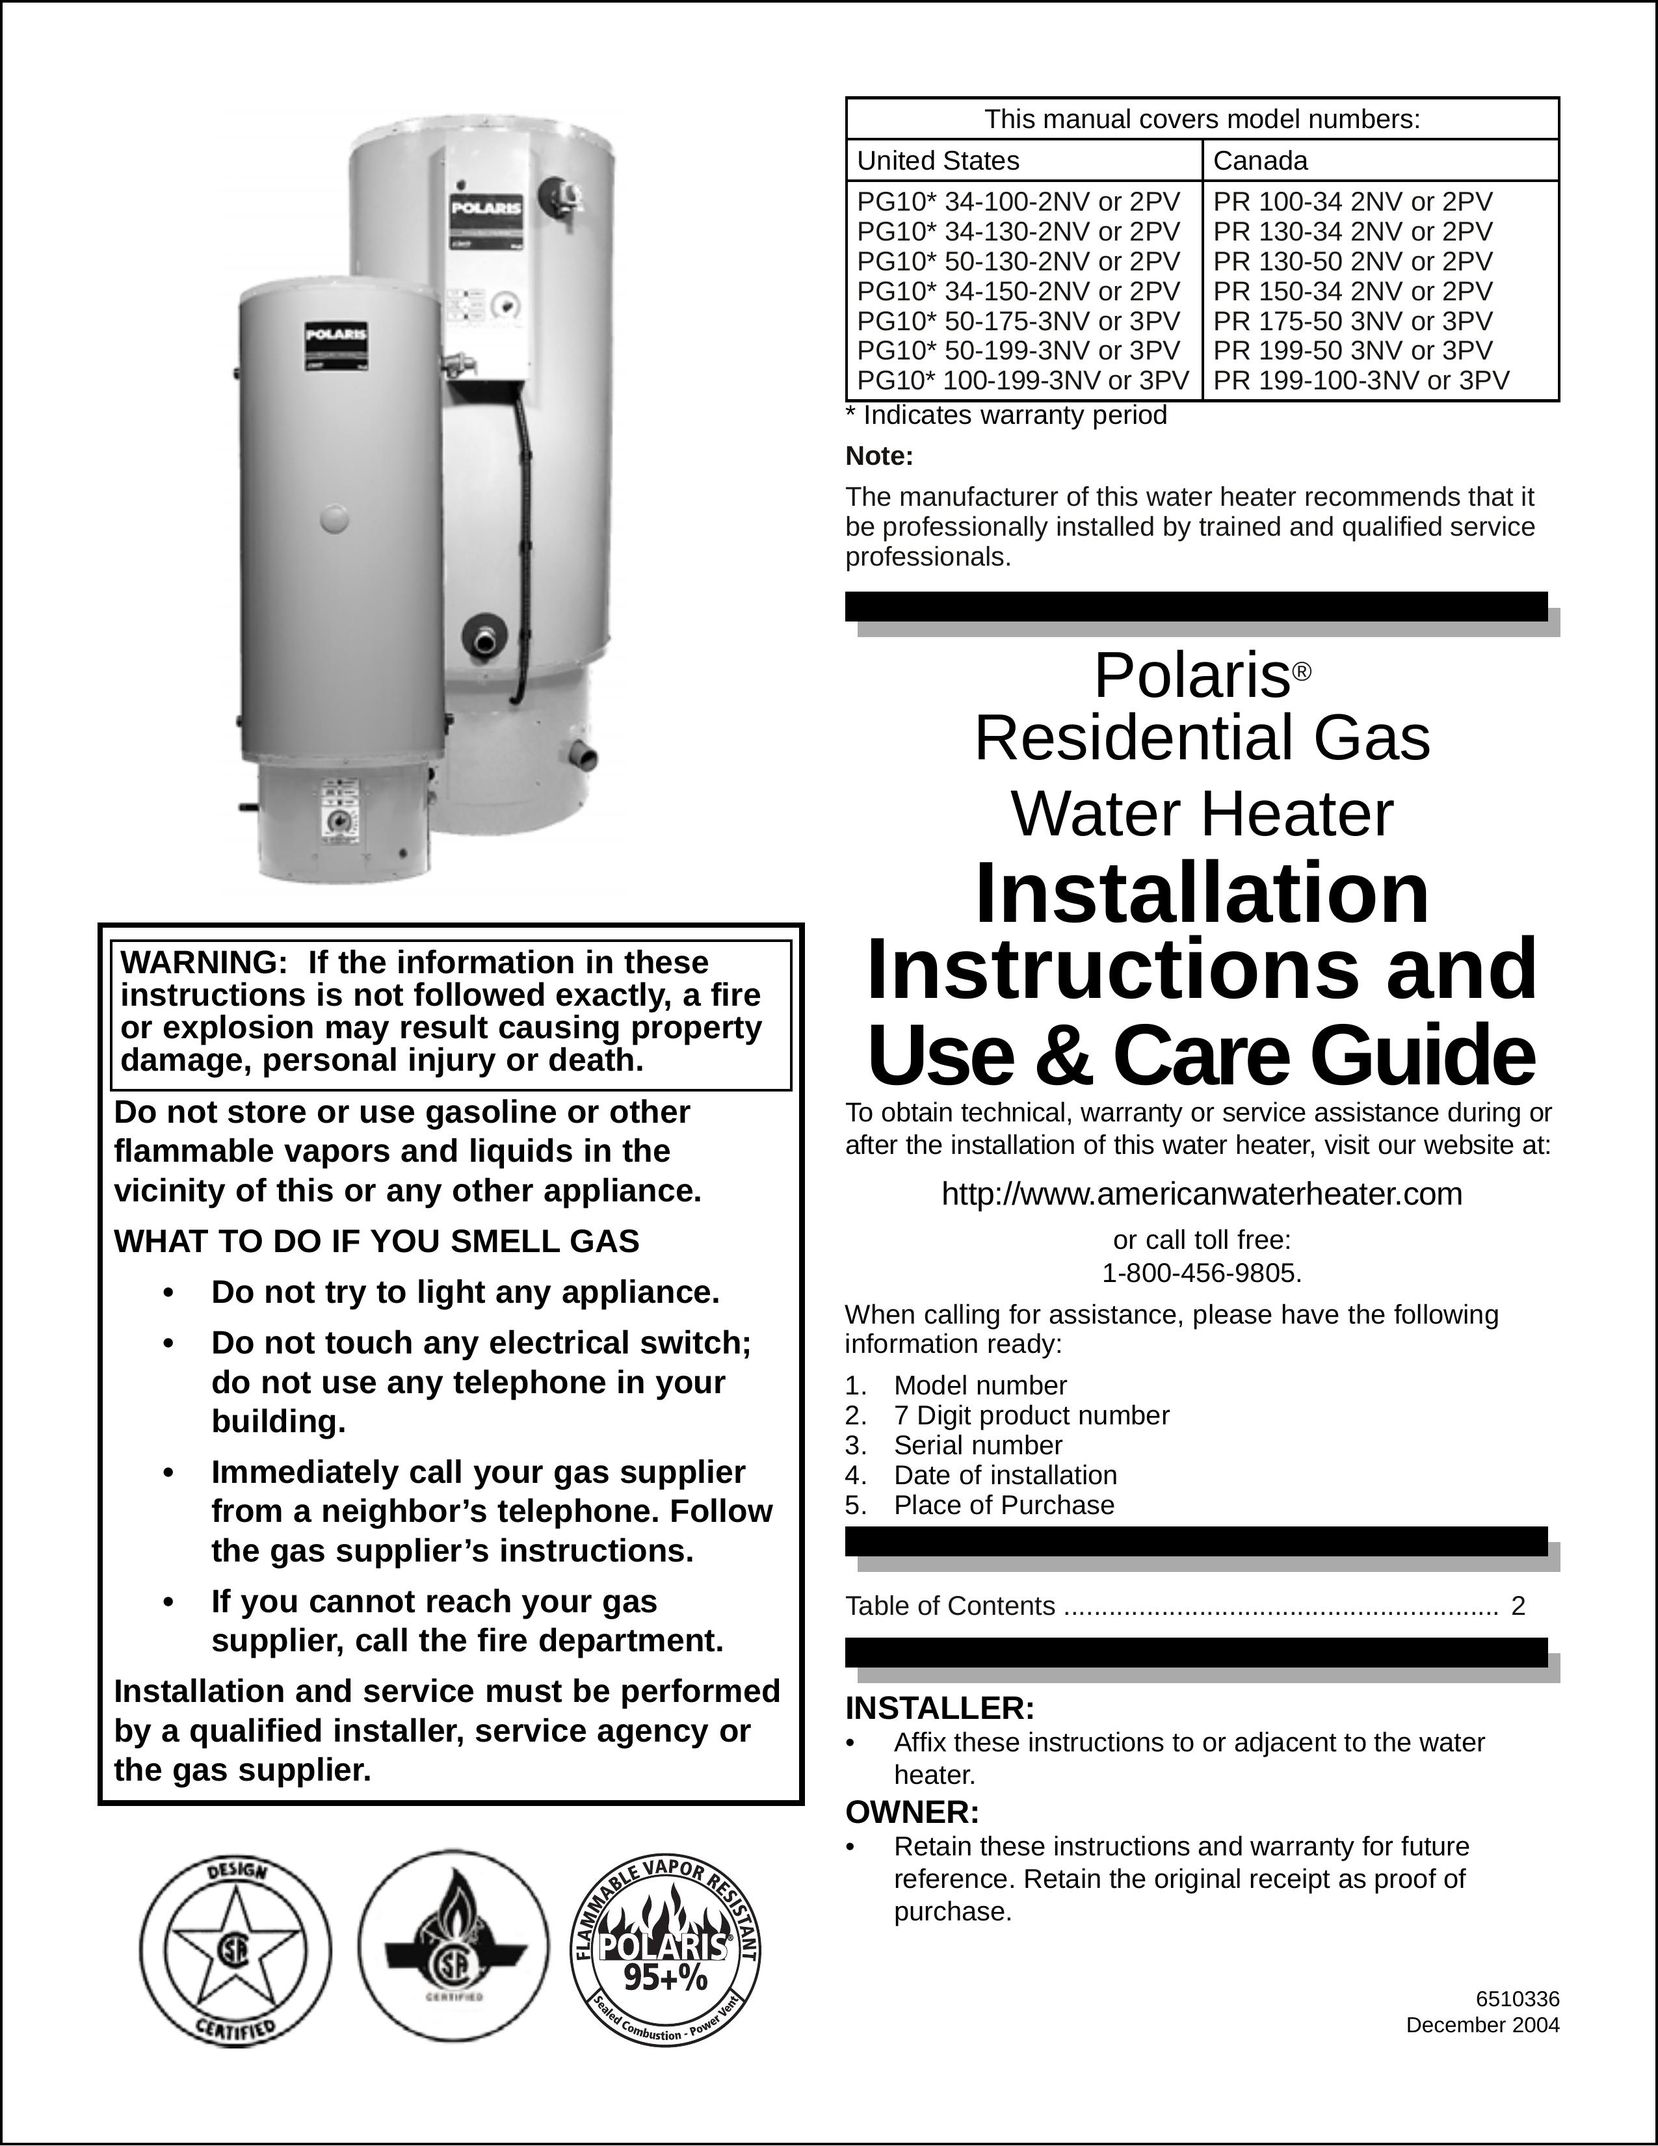 Polaris PG10* 50-130-2NV OR 2PV Water Heater User Manual